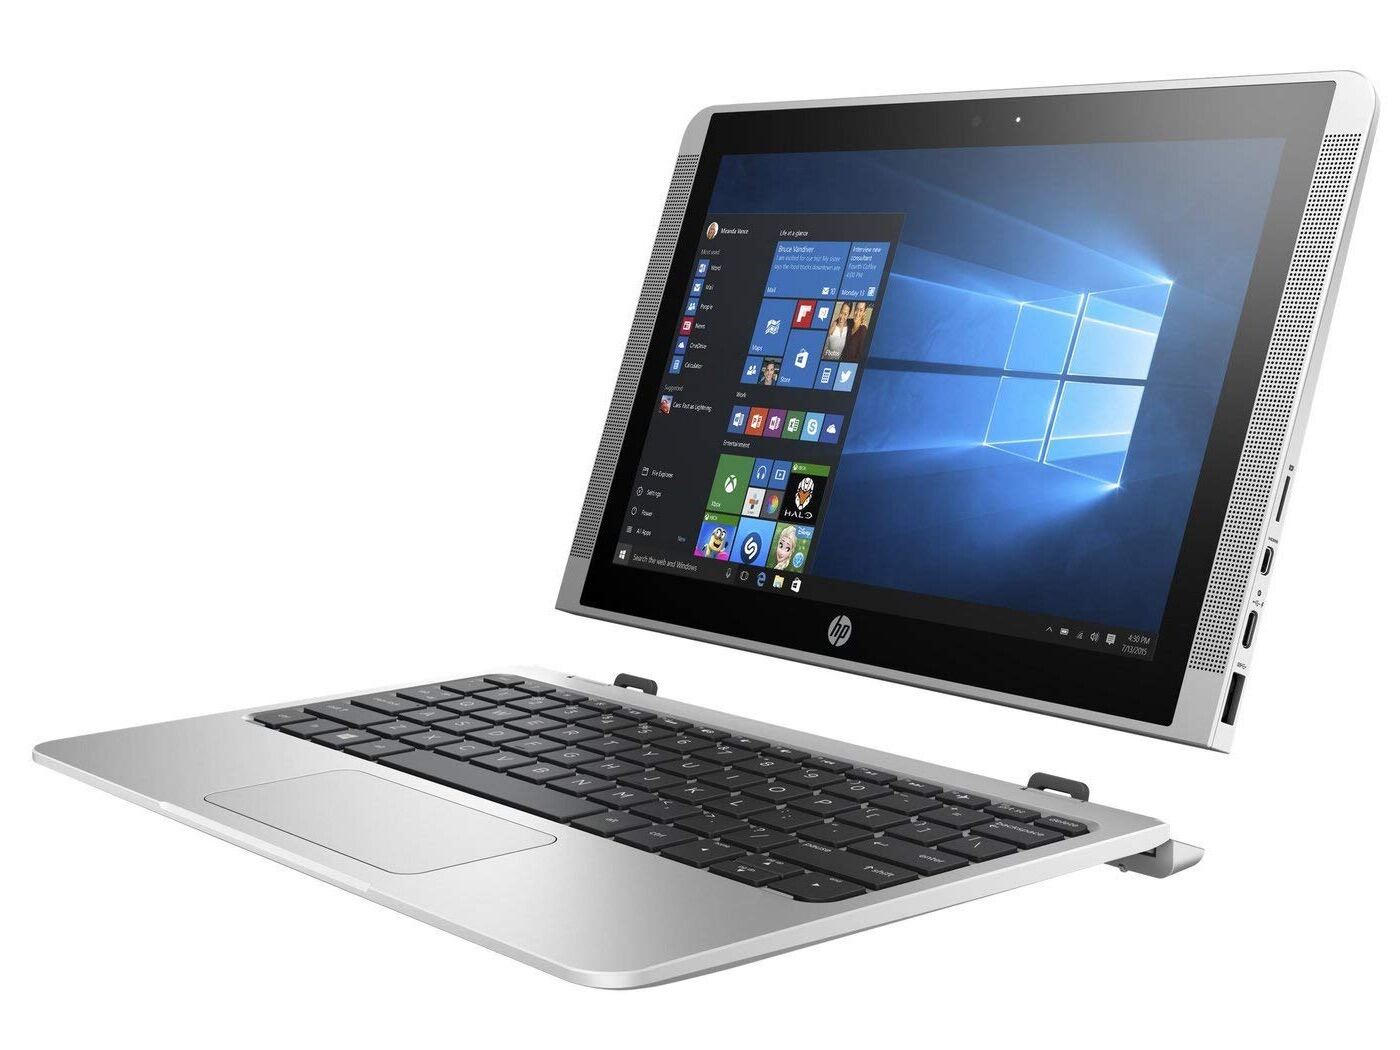 Bảng giá Laptop 2 trong 1 kiêm máy tính bảng HP X2 210 G2 - Atom X5, 4gb Ram, 64gb SSD, 10.1inch cảm ứng, bàn phím tháo rời Phong Vũ